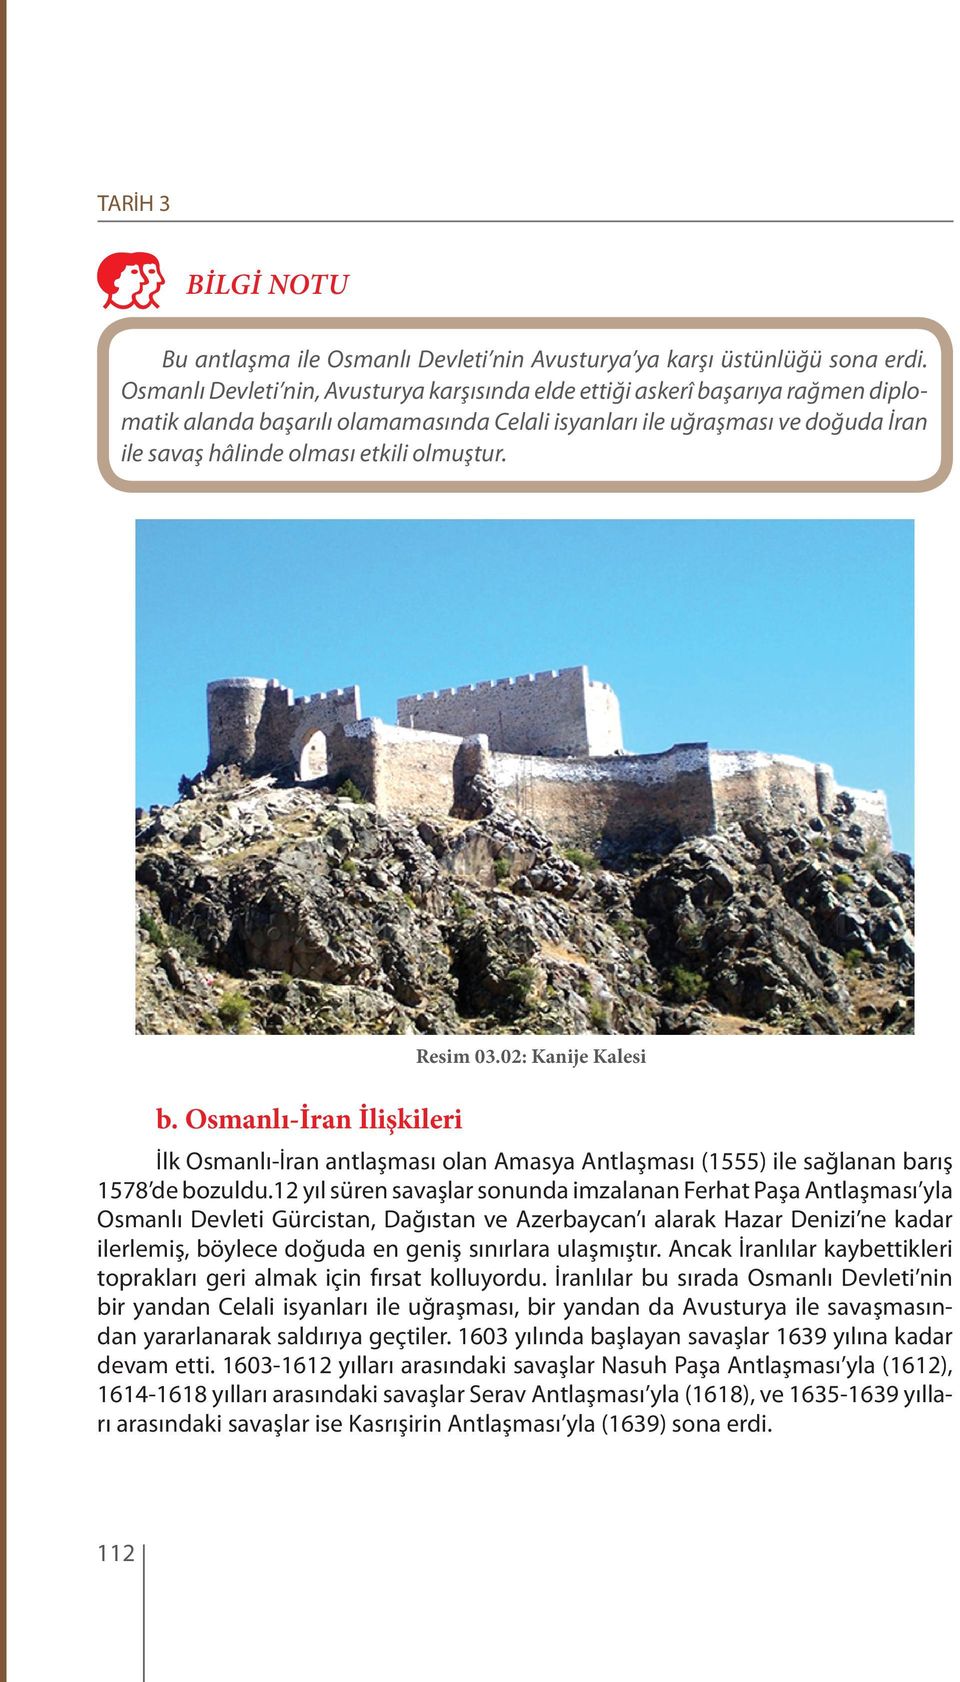 olmuştur. b. Osmanlı-İran İlişkileri Resim 03.02: Kanije Kalesi İlk Osmanlı-İran antlaşması olan Amasya Antlaşması (1555) ile sağlanan barış 1578 de bozuldu.